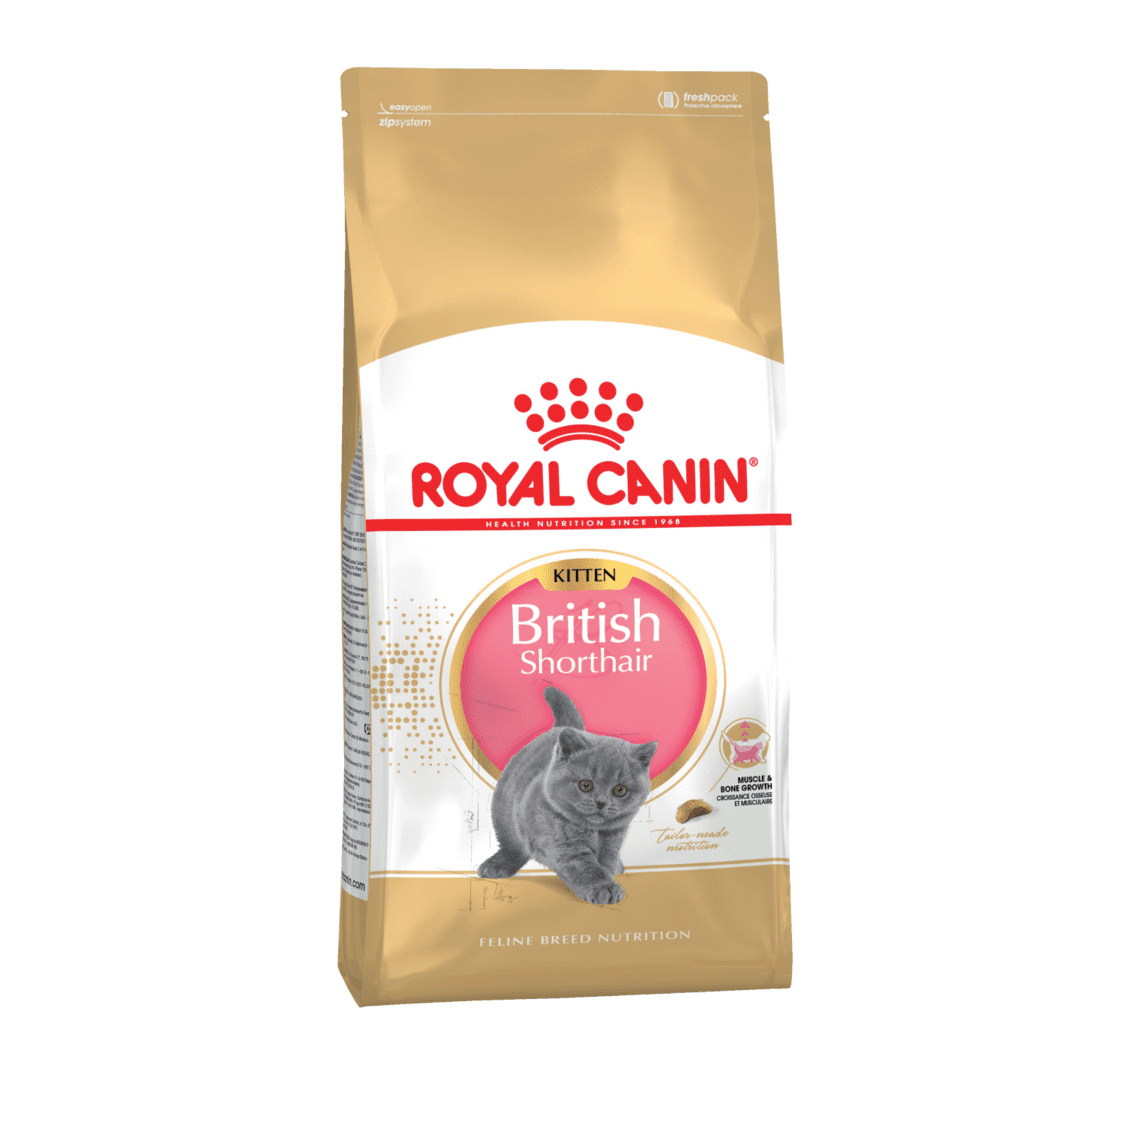 Royal Canin Корм Royal Canin корм для британских короткошерстных котят 4-12 мес. (10 кг) royal canin корм royal canin корм для британских короткошерстных котят 4 12 мес 10 кг